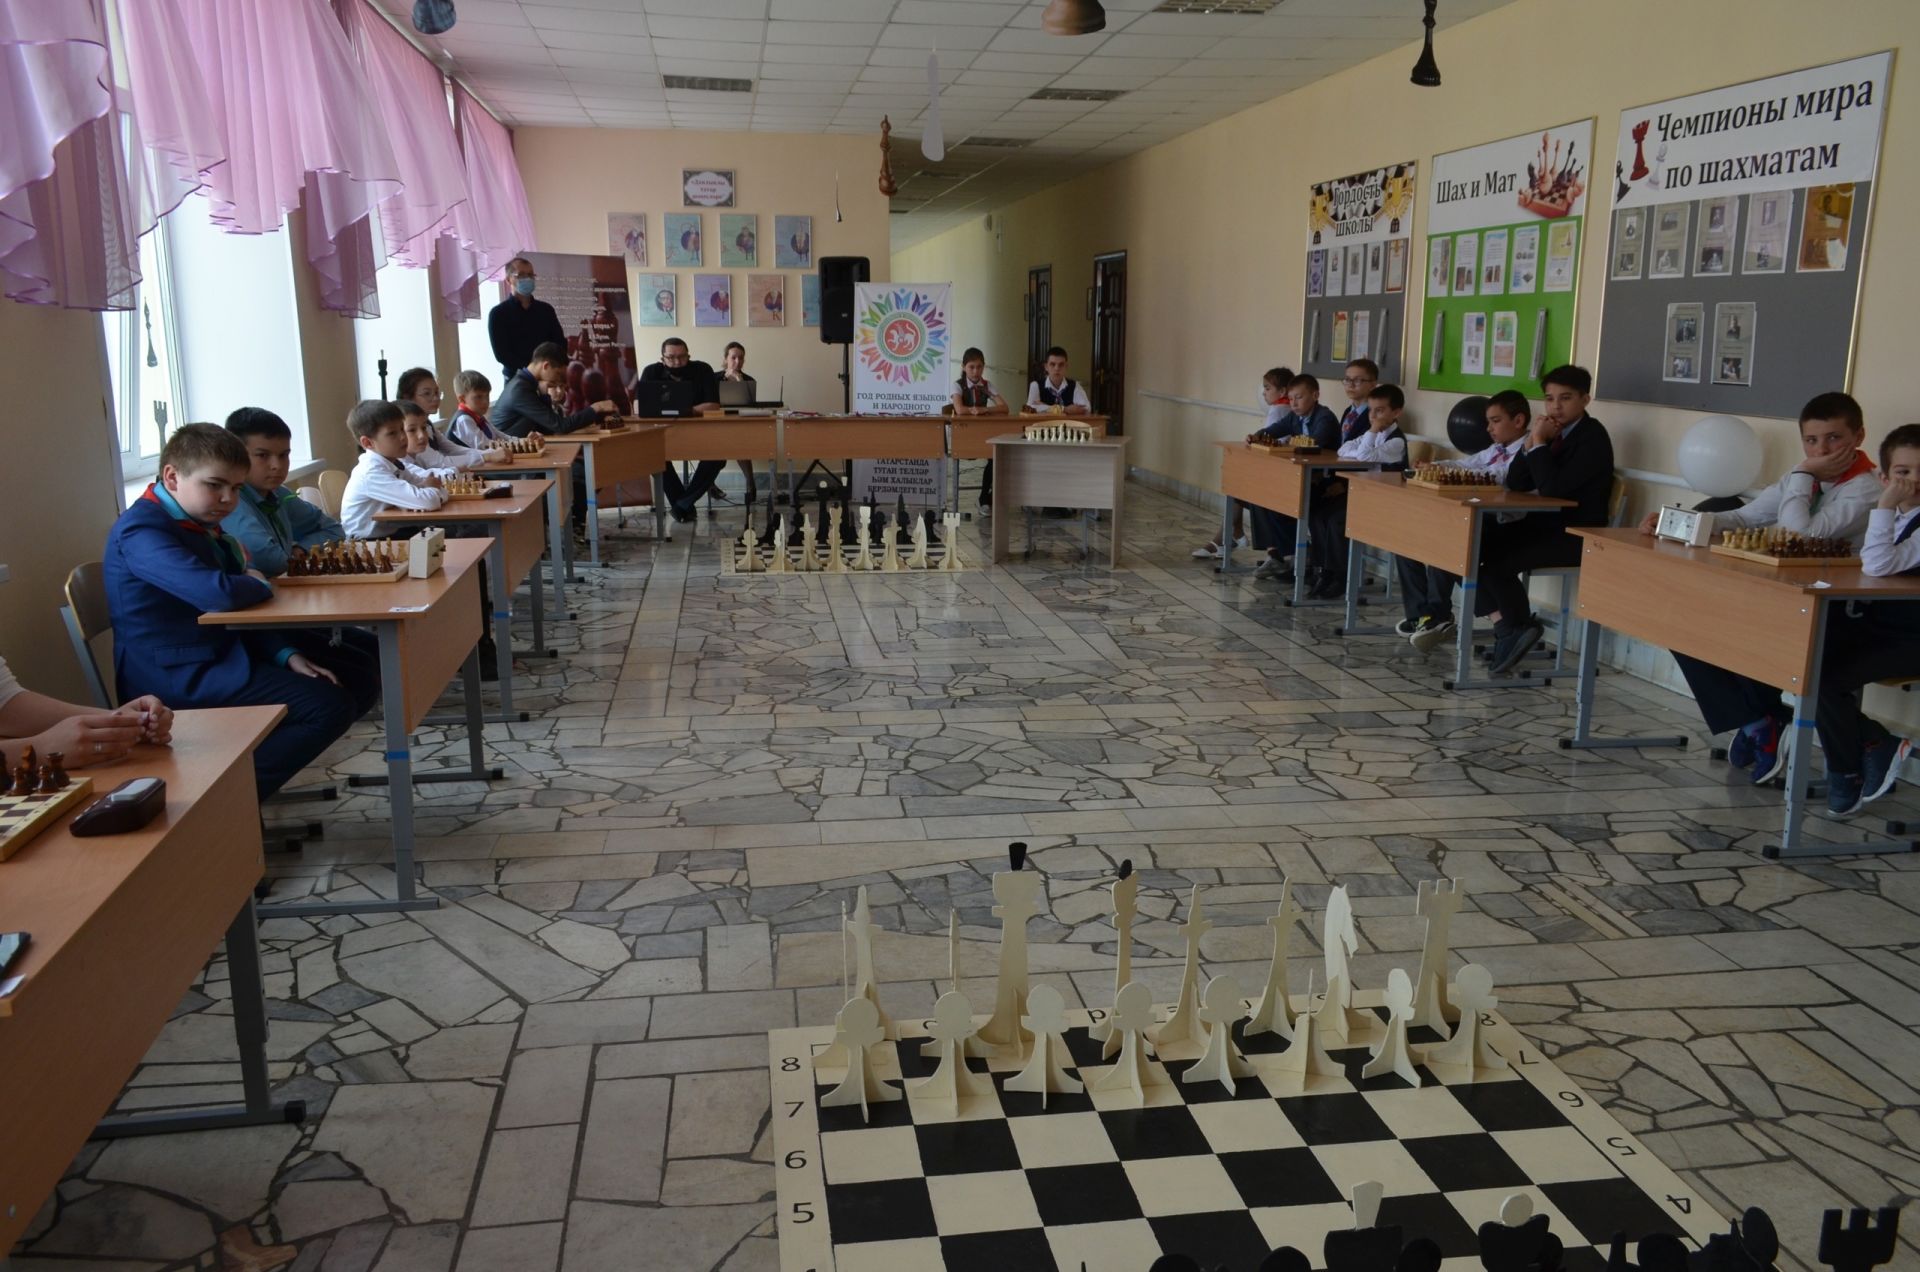 Районда бер-бер артлы шахмат зоналары ачыла